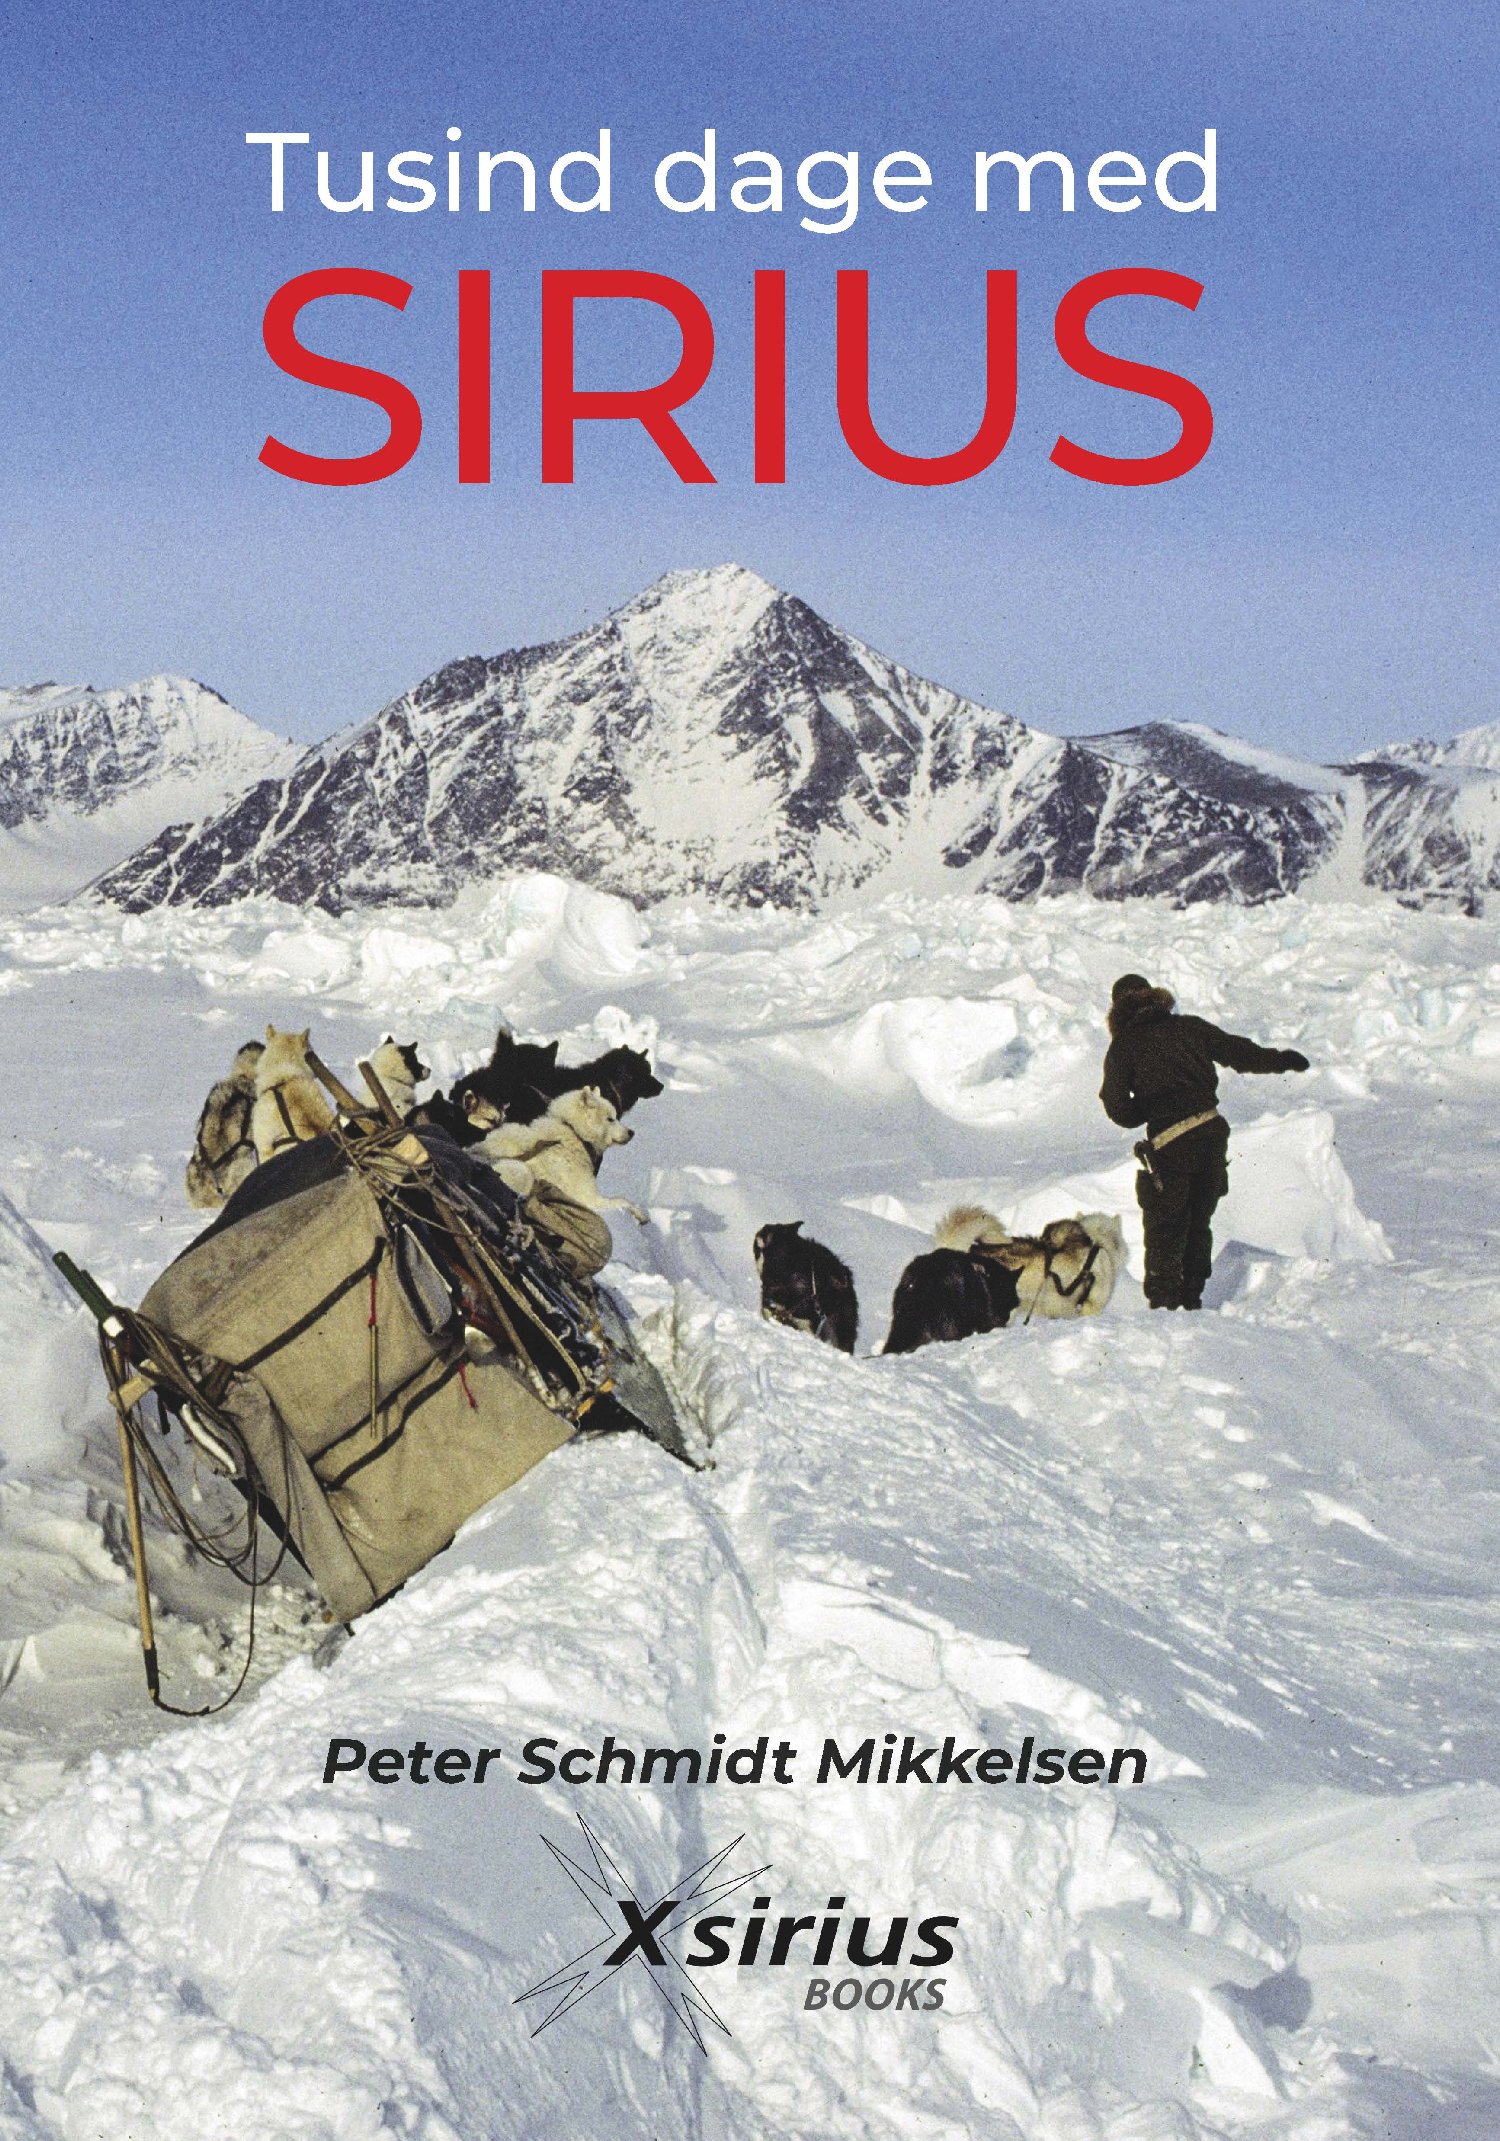    Tusind dage med SIRIUS  Tusind dage med SIRIUS  - ny udgave.  En ny udgave af Tusind dage med SIRIUS - bogen om de mangesidige oplevelser som patruljemand ved Slædepatruljen Sirius i Nordøstgrønland. Udkommer 1. februar 2023.